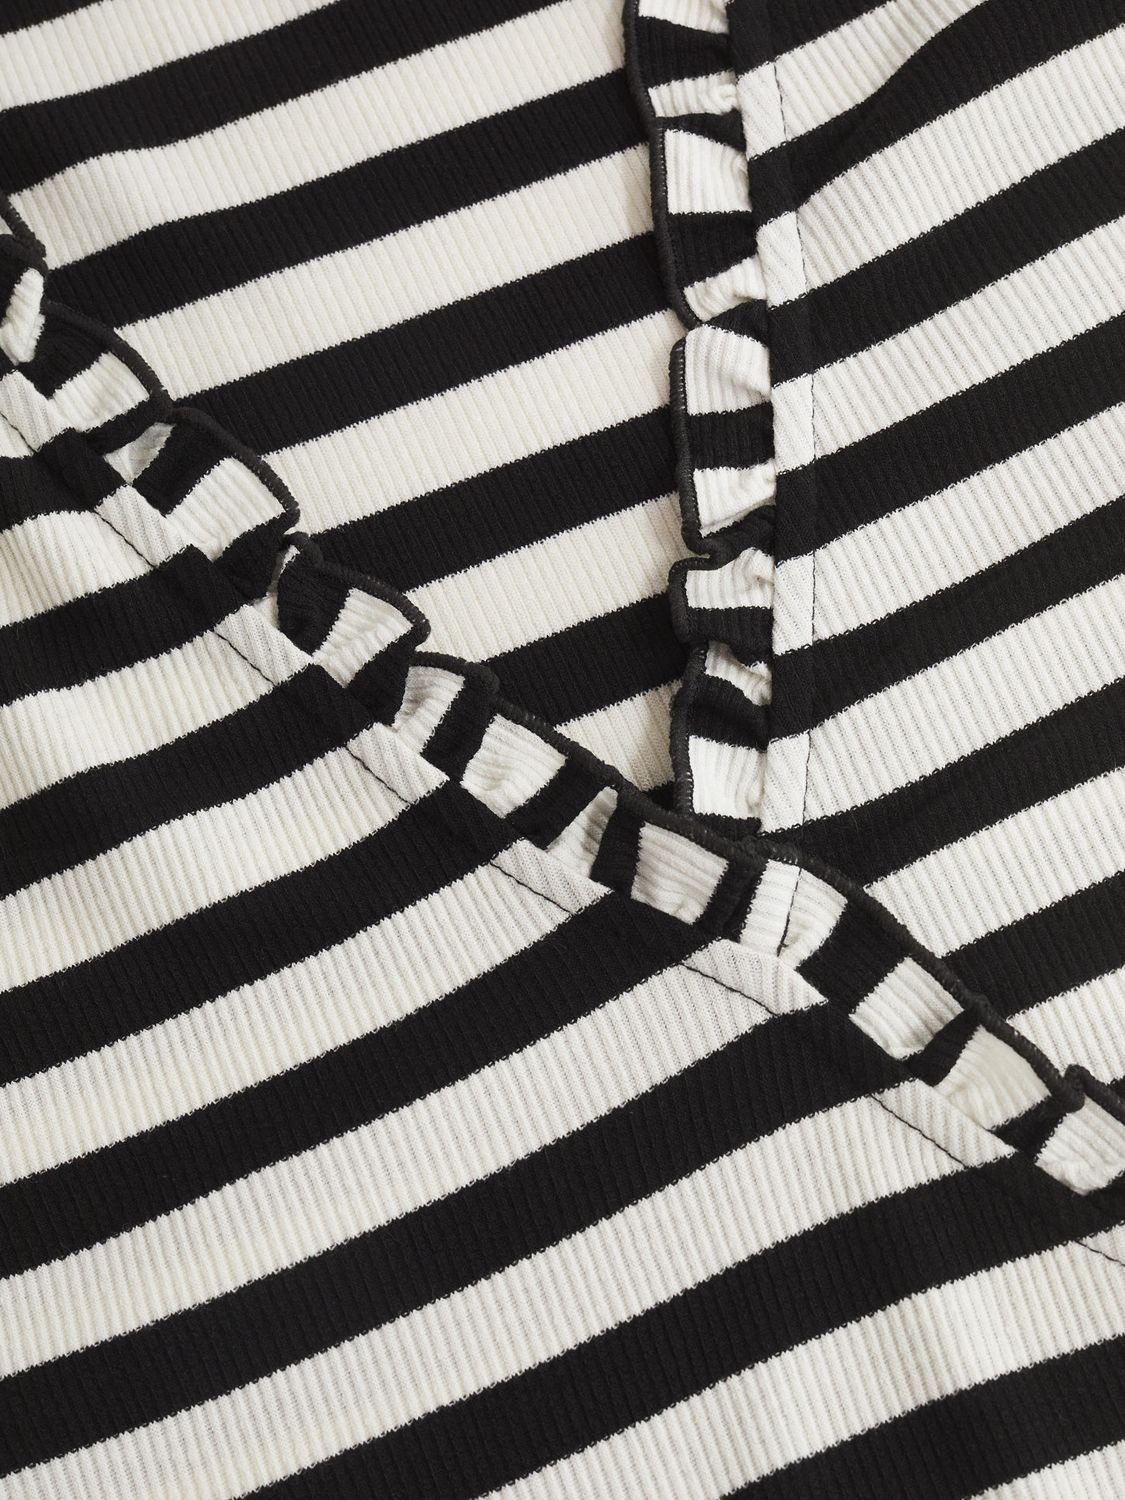 Mango Marina Stripe Frill Wrap Neck Top, Black/White, XXS